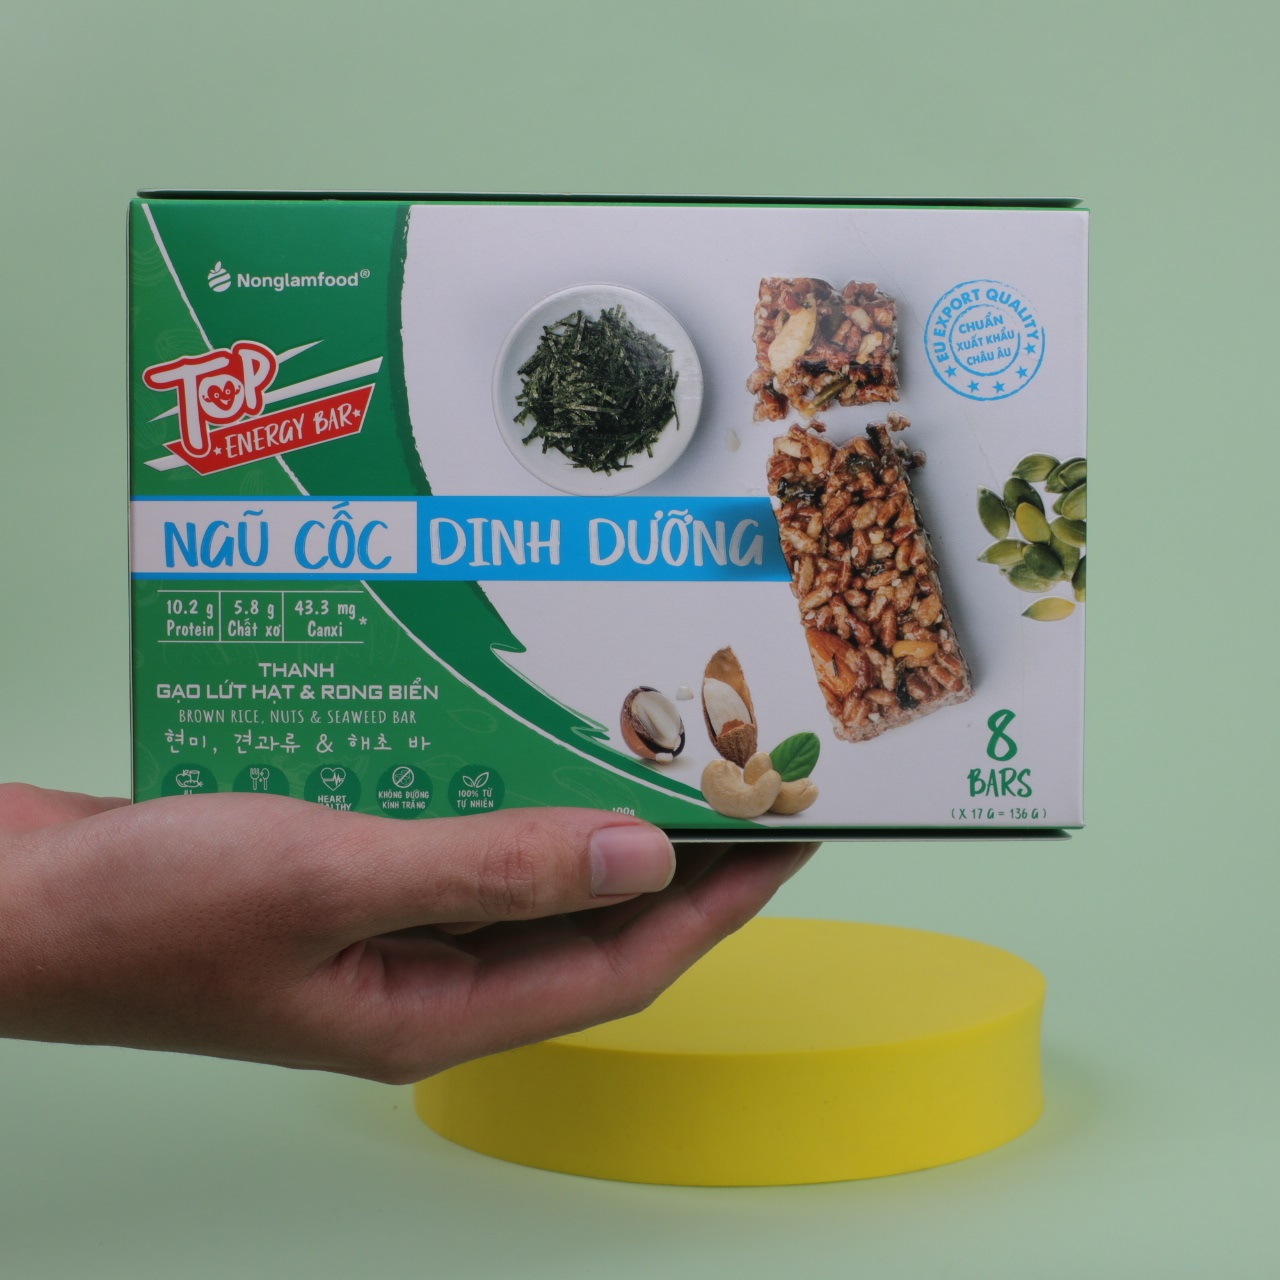 [THUẦN CHAY]Thanh gạo lứt Hạt & Rong Biển Nonglamfood hộp 8 thanh 136g | Chay mặn đều dùng được | Hỗ trợ ăn kiêng giảm cân | Bữa ăn dinh dưỡng thay thế lành mạnh